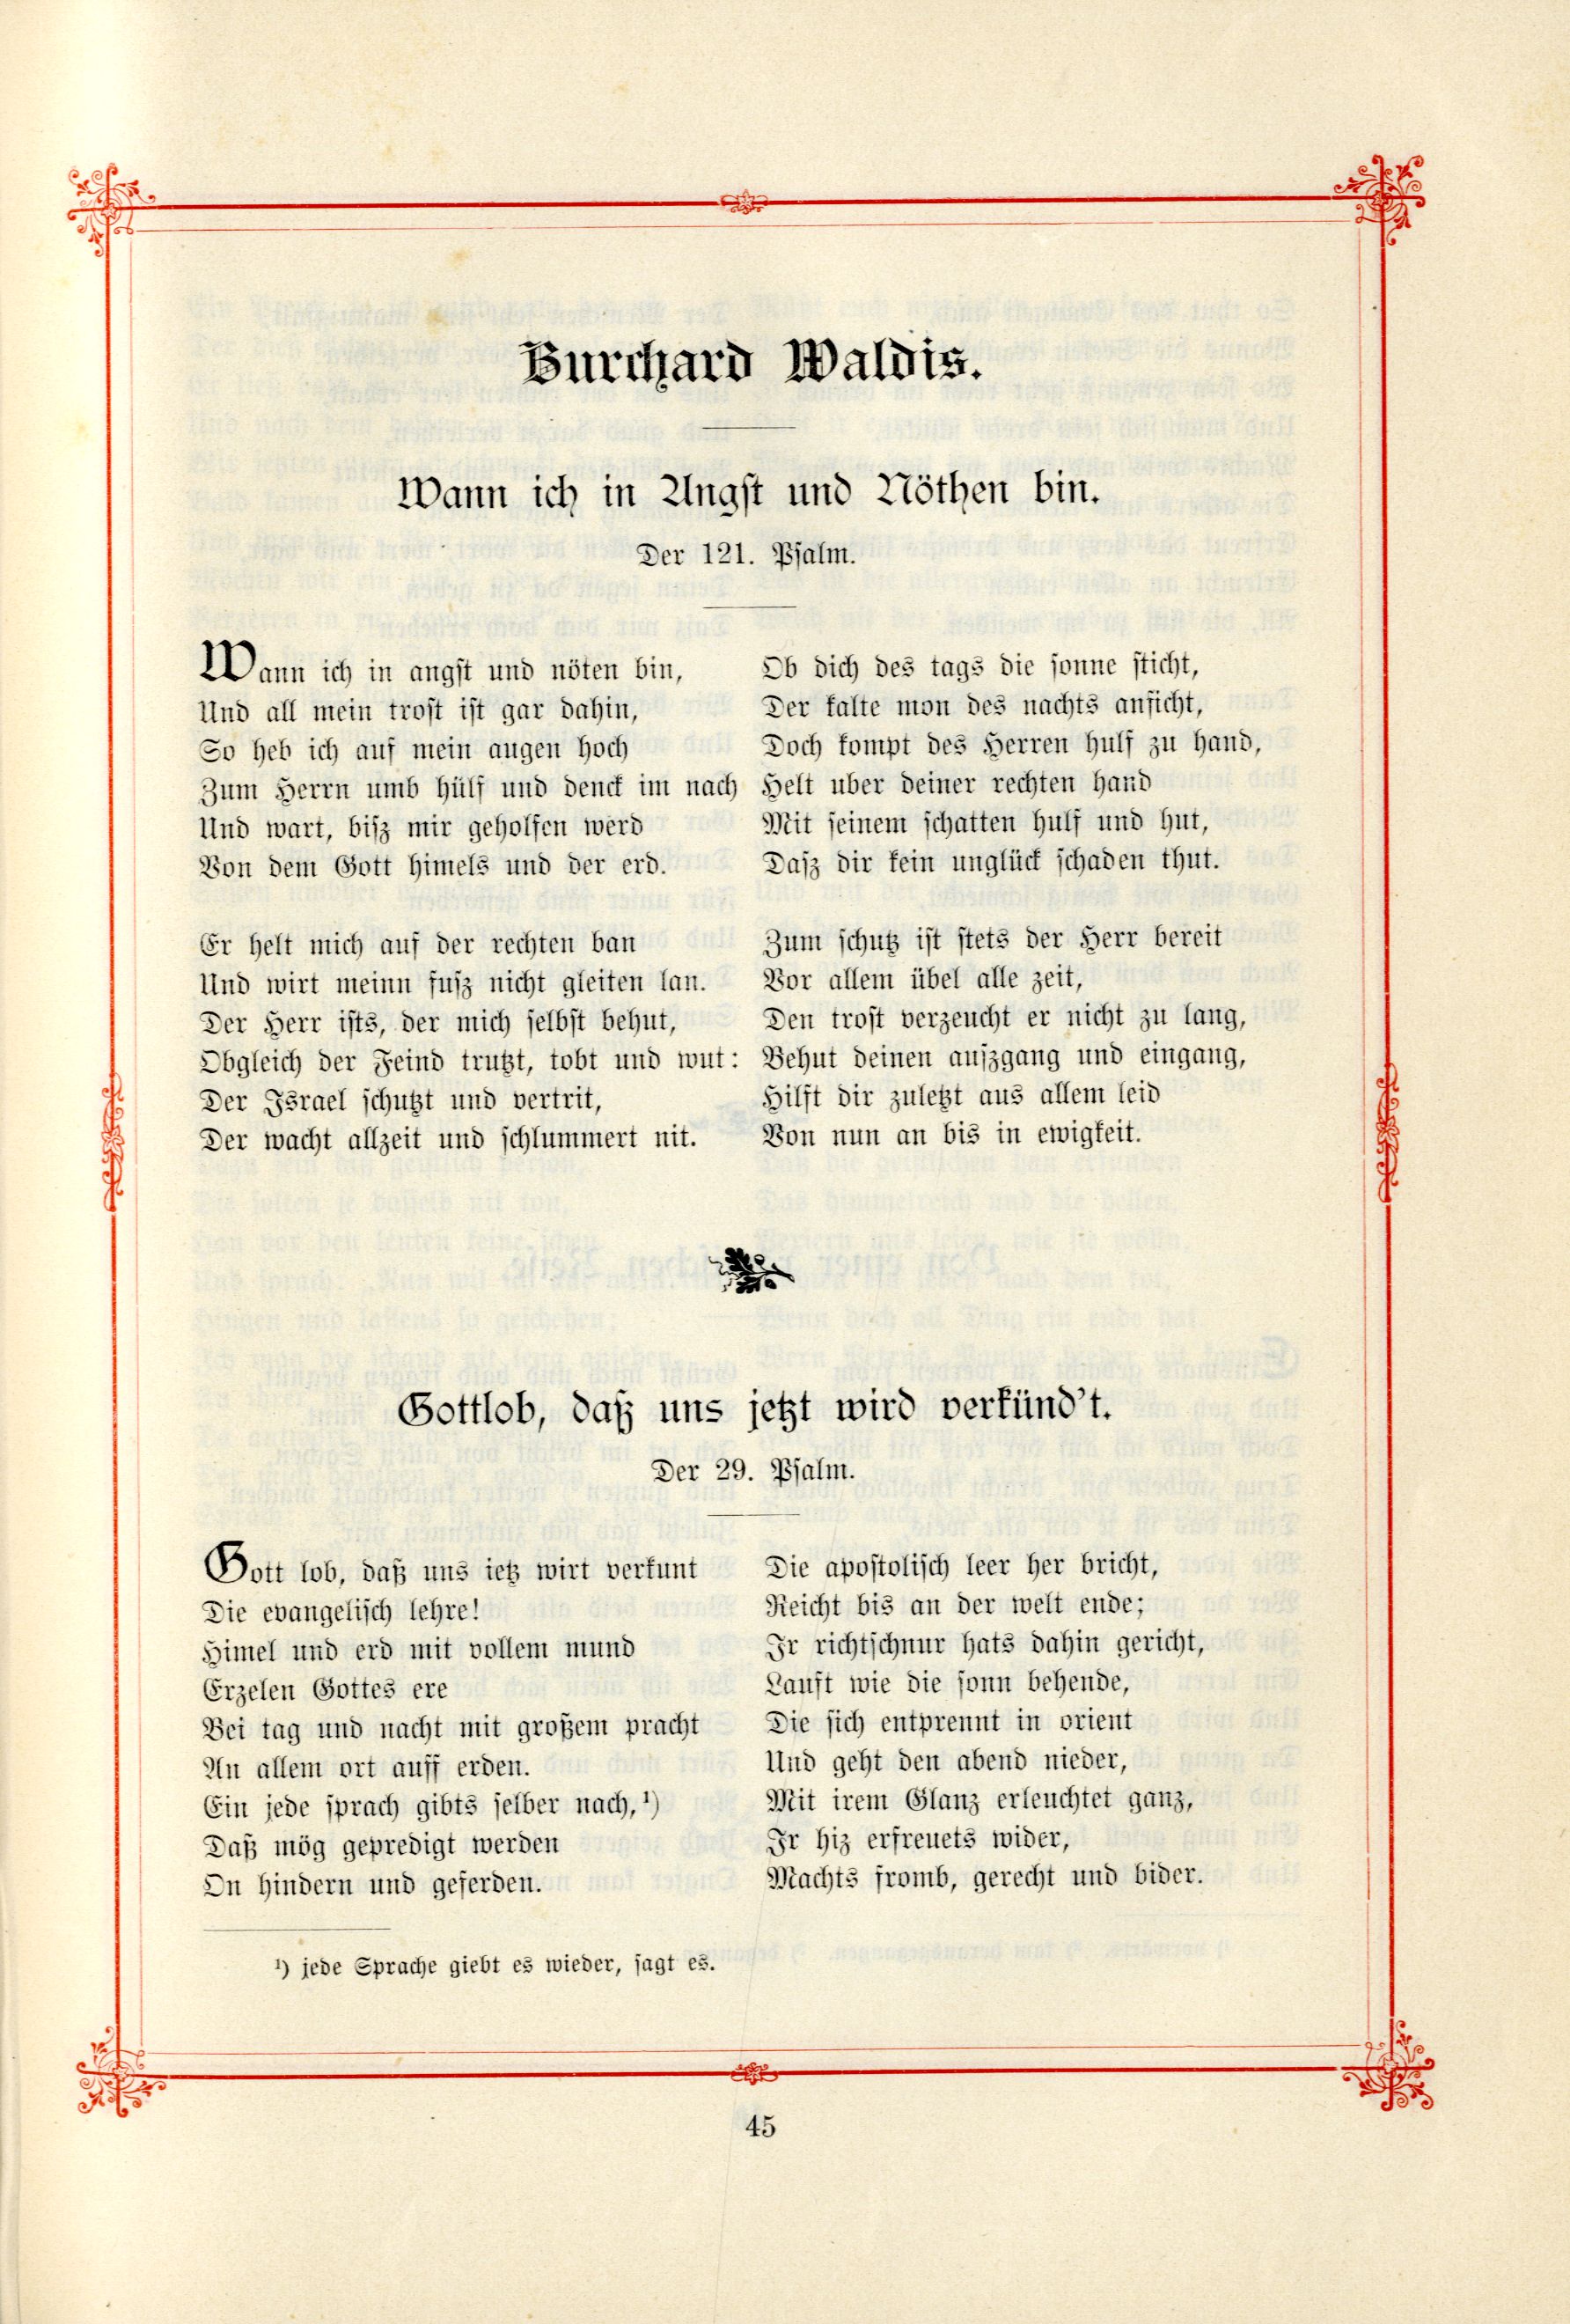 Wann ich in Angst und Nöthen bin (1895) | 1. (45) Main body of text